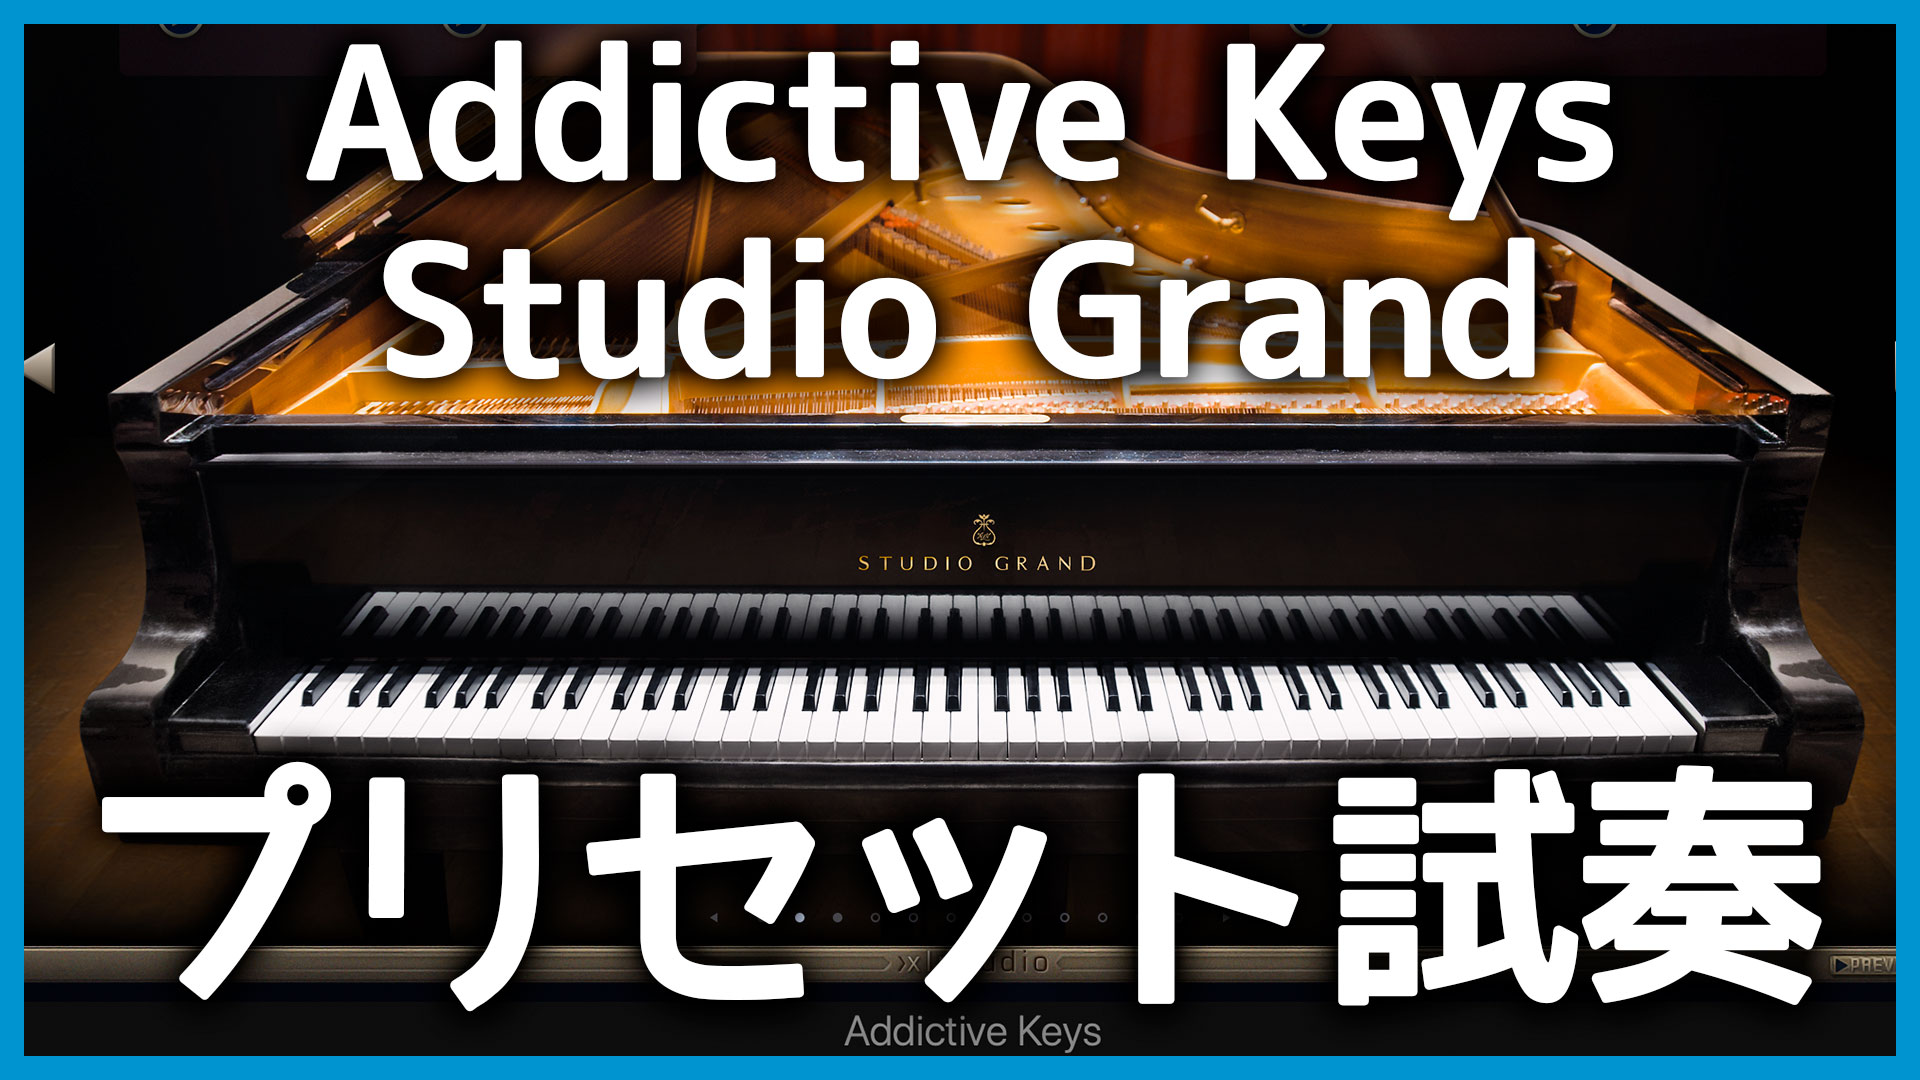 人気ピアノ音源「Addictive Keys Studio Grand」が良すぎたのでサンプル曲付きで紹介します